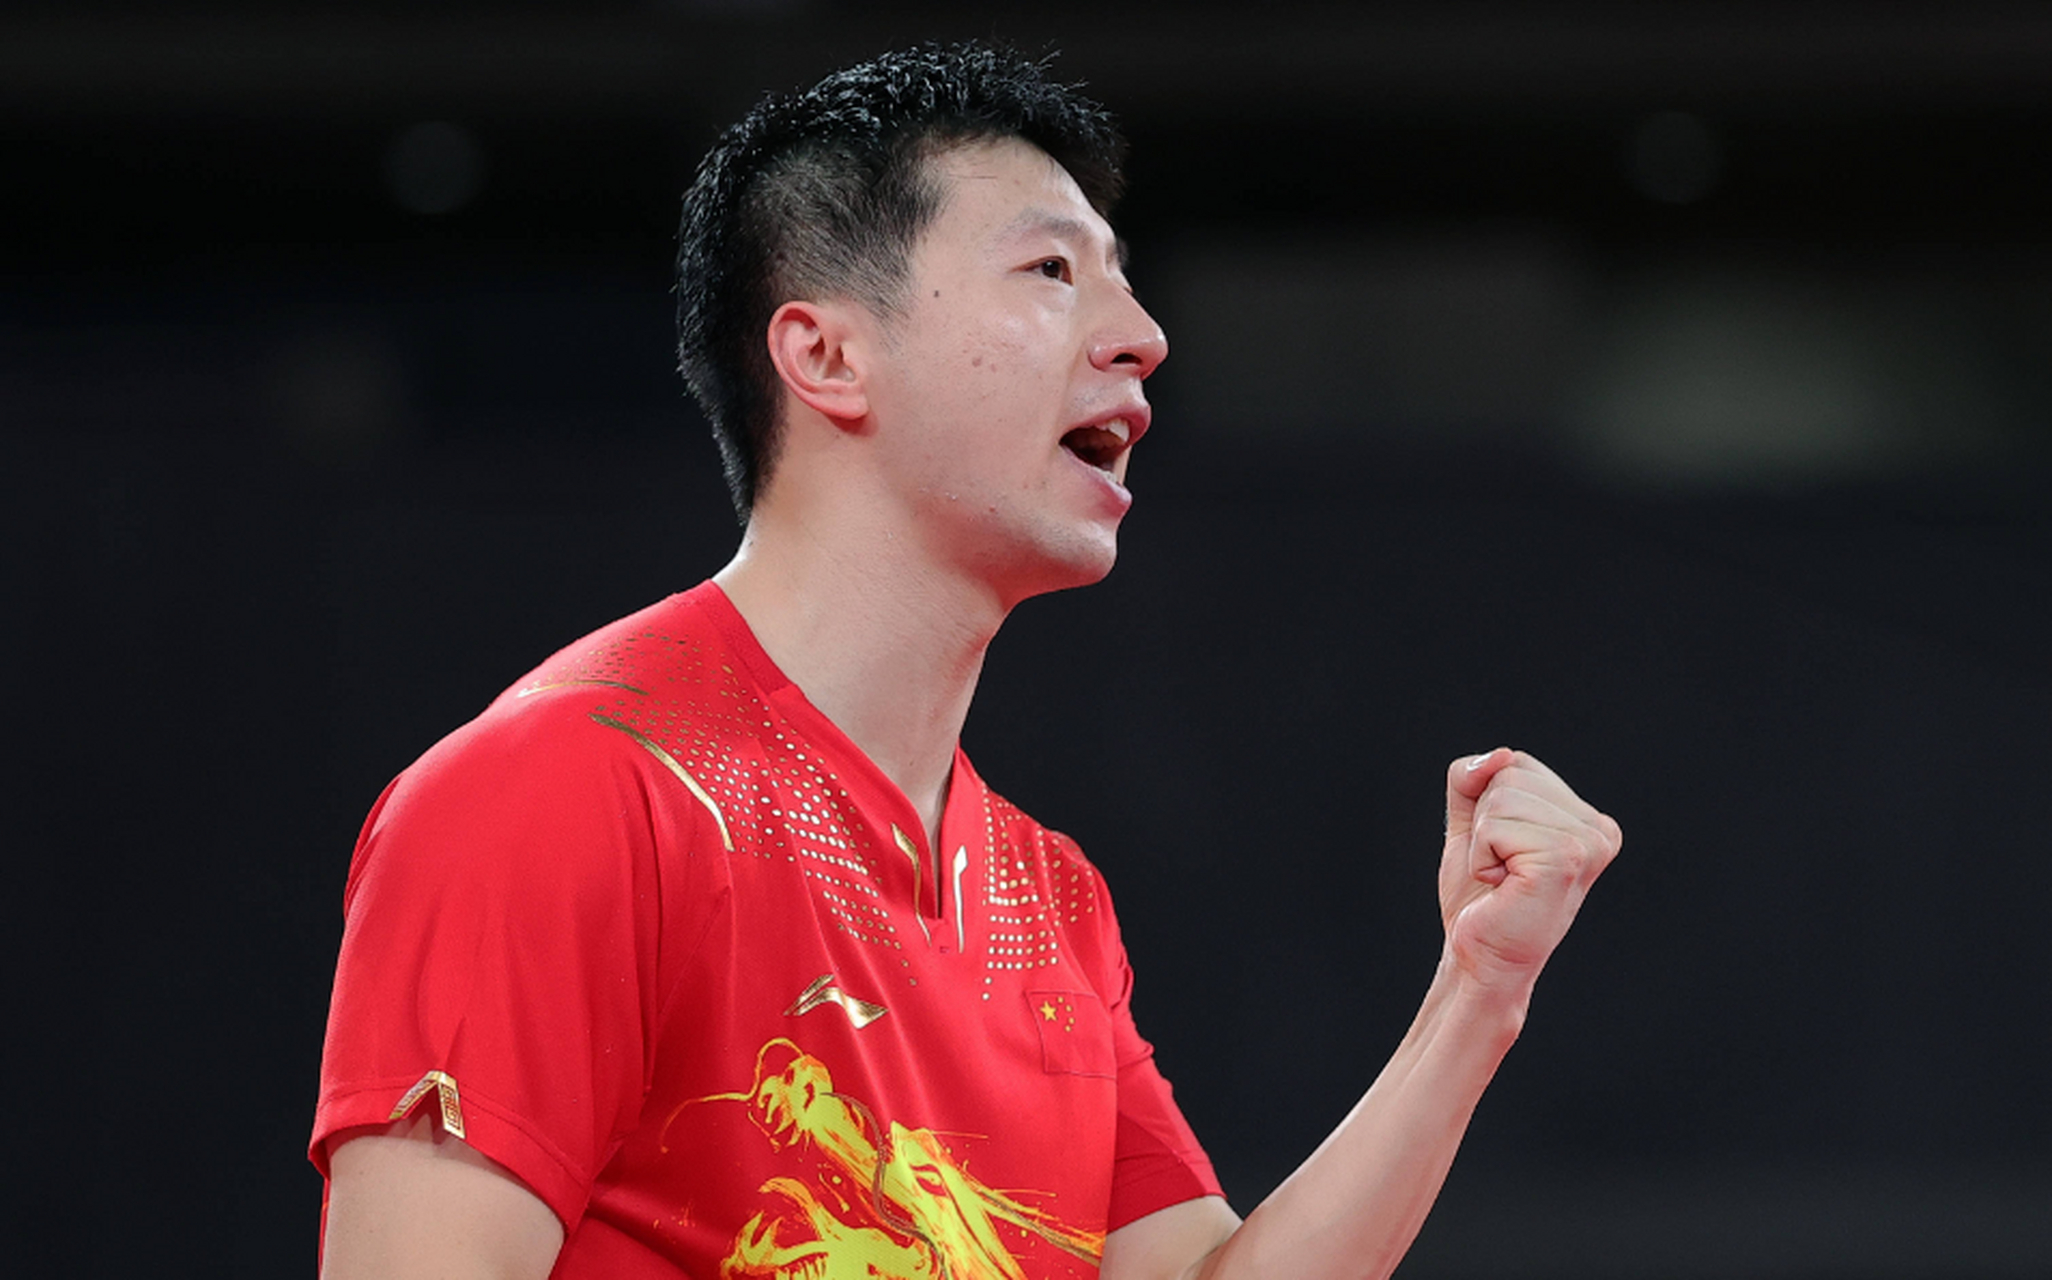 中国乒乓球名将马龙宣布退出重庆wtt冠军赛,引发广泛关注和质疑